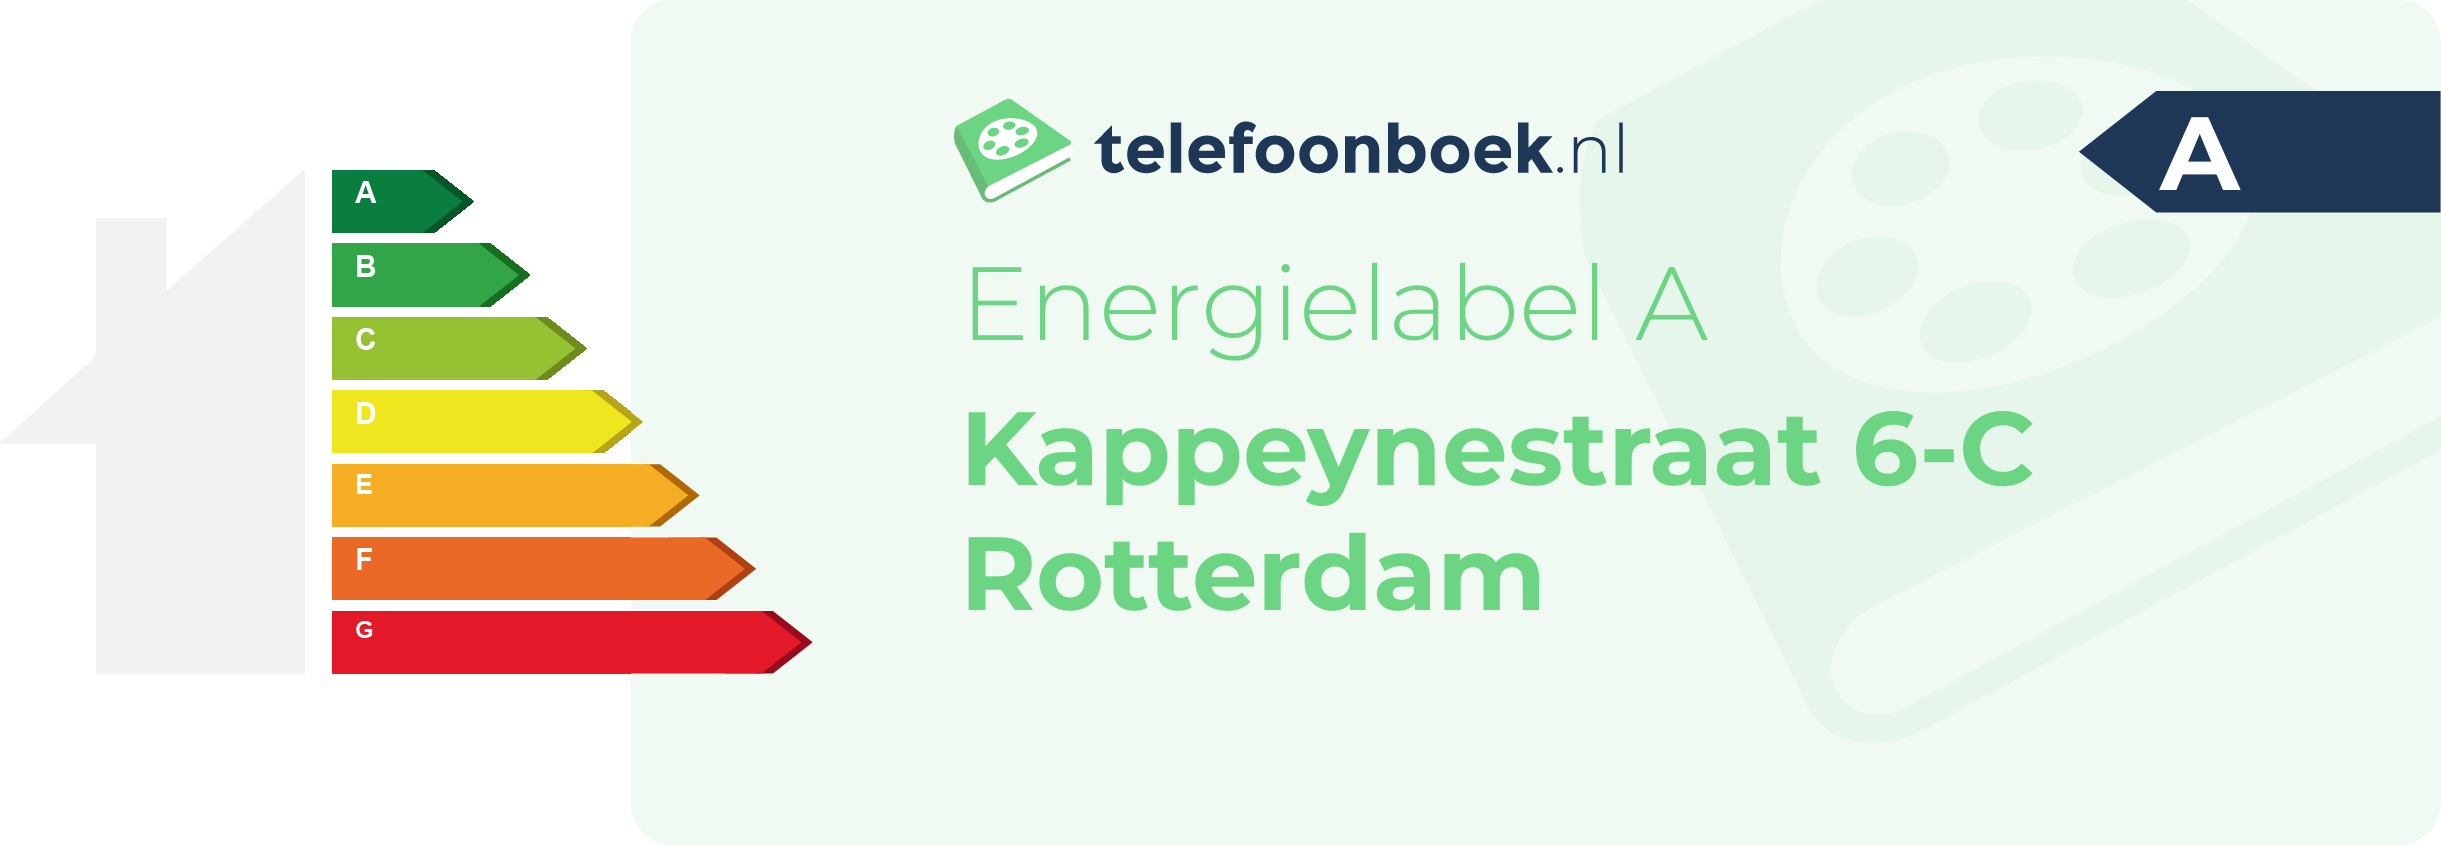 Energielabel Kappeynestraat 6-C Rotterdam